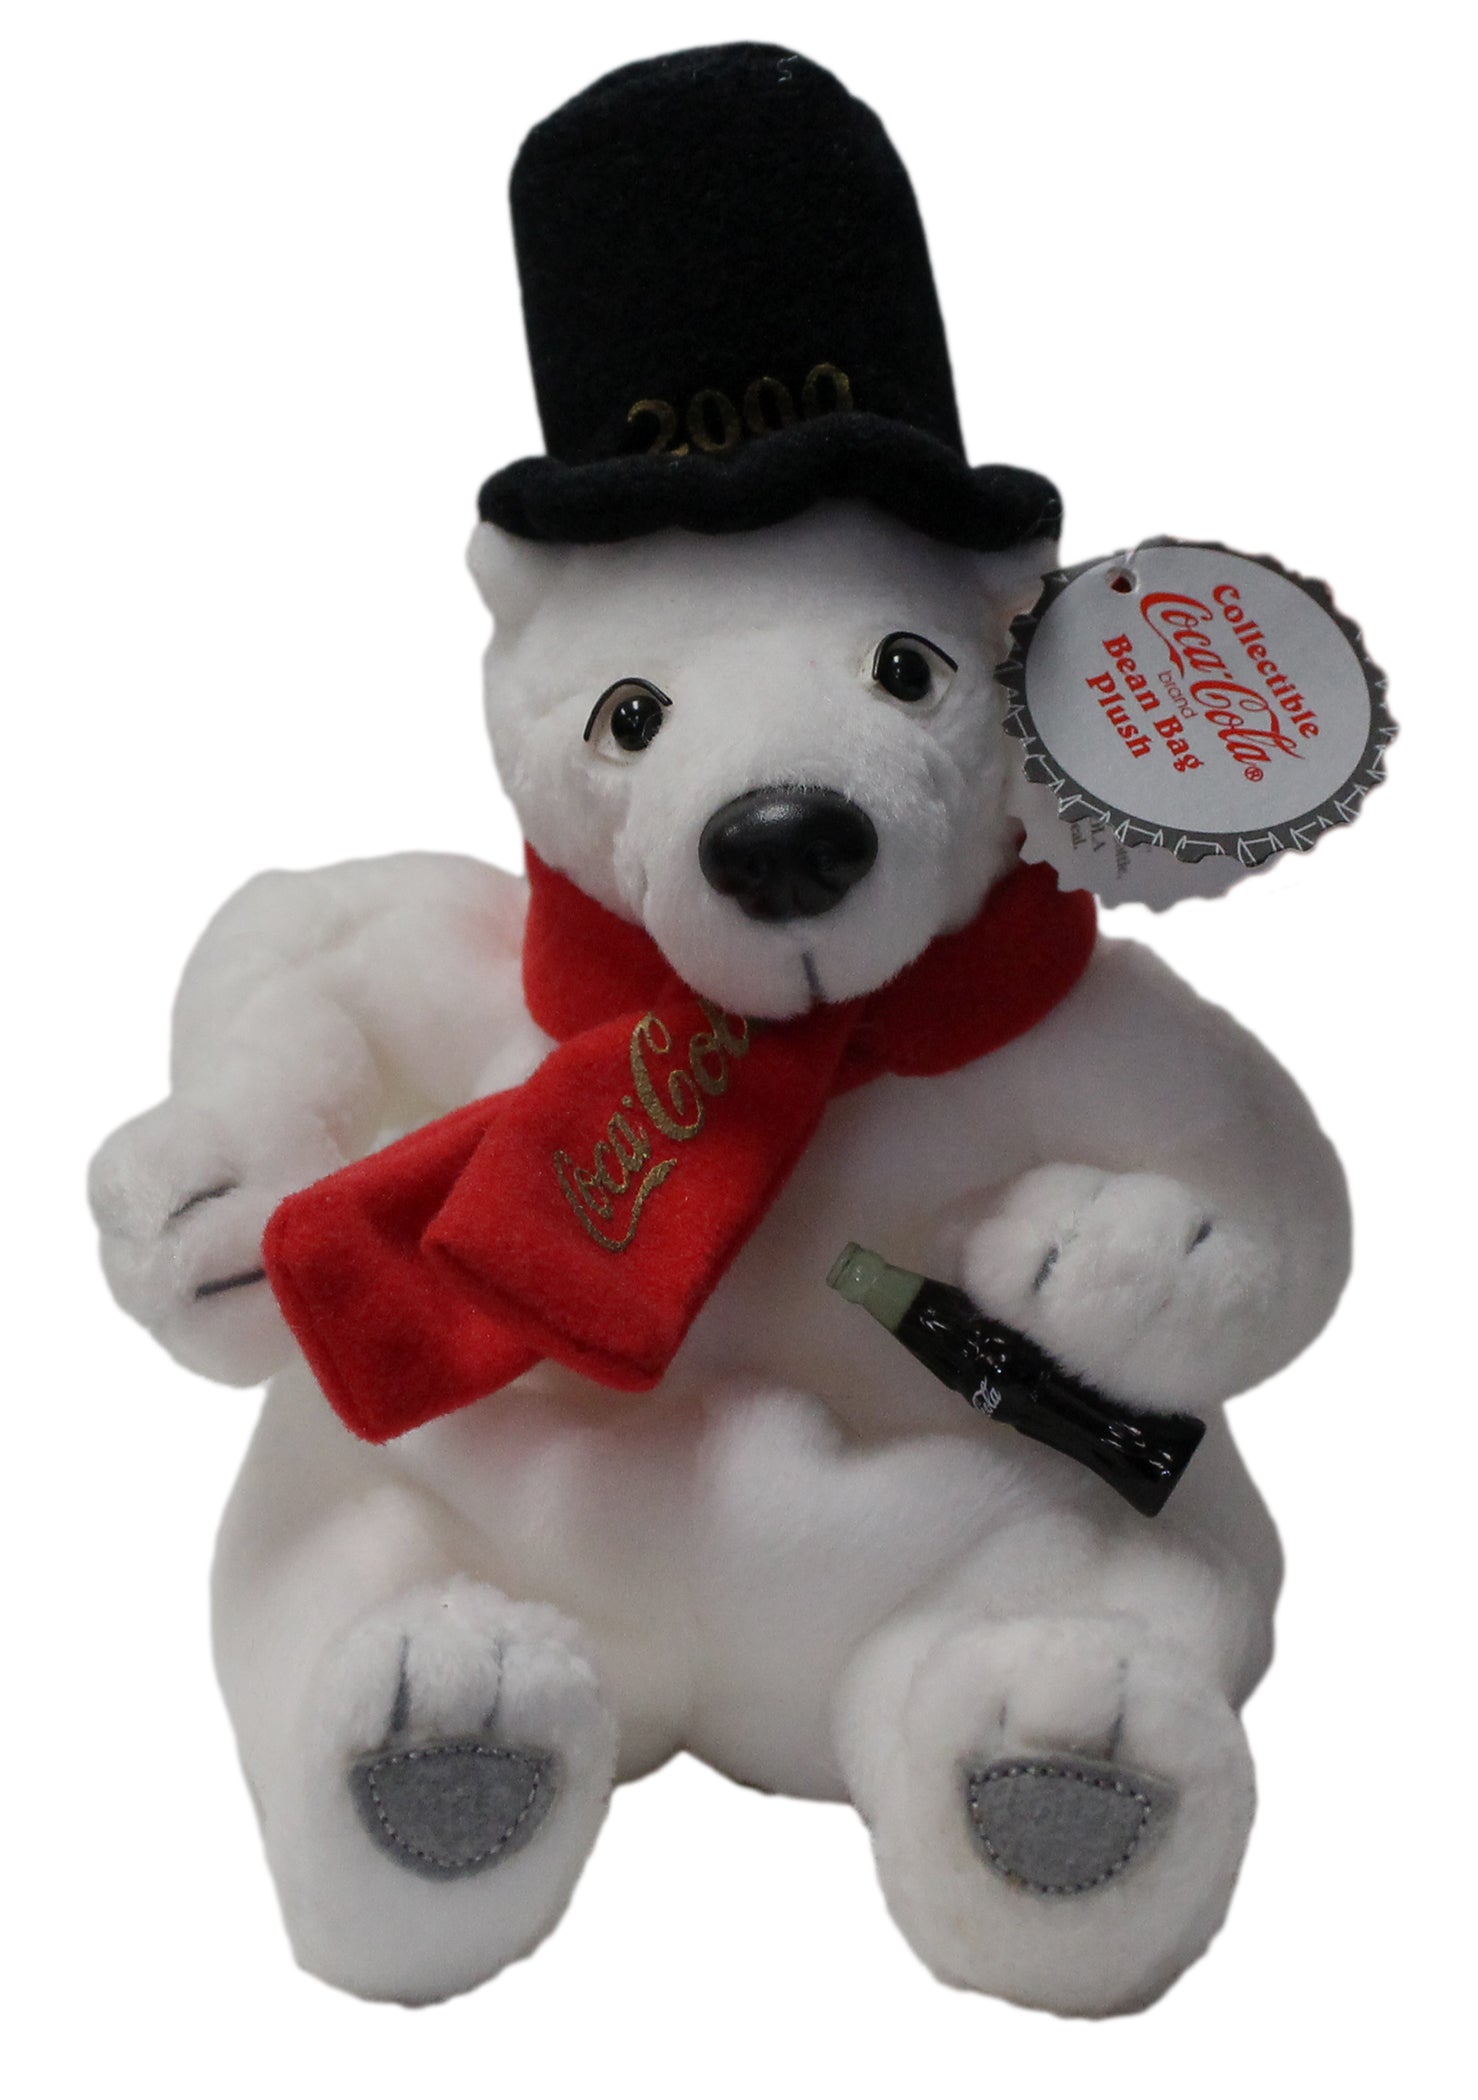 Coke Plush: Bear in a 2000 Hat